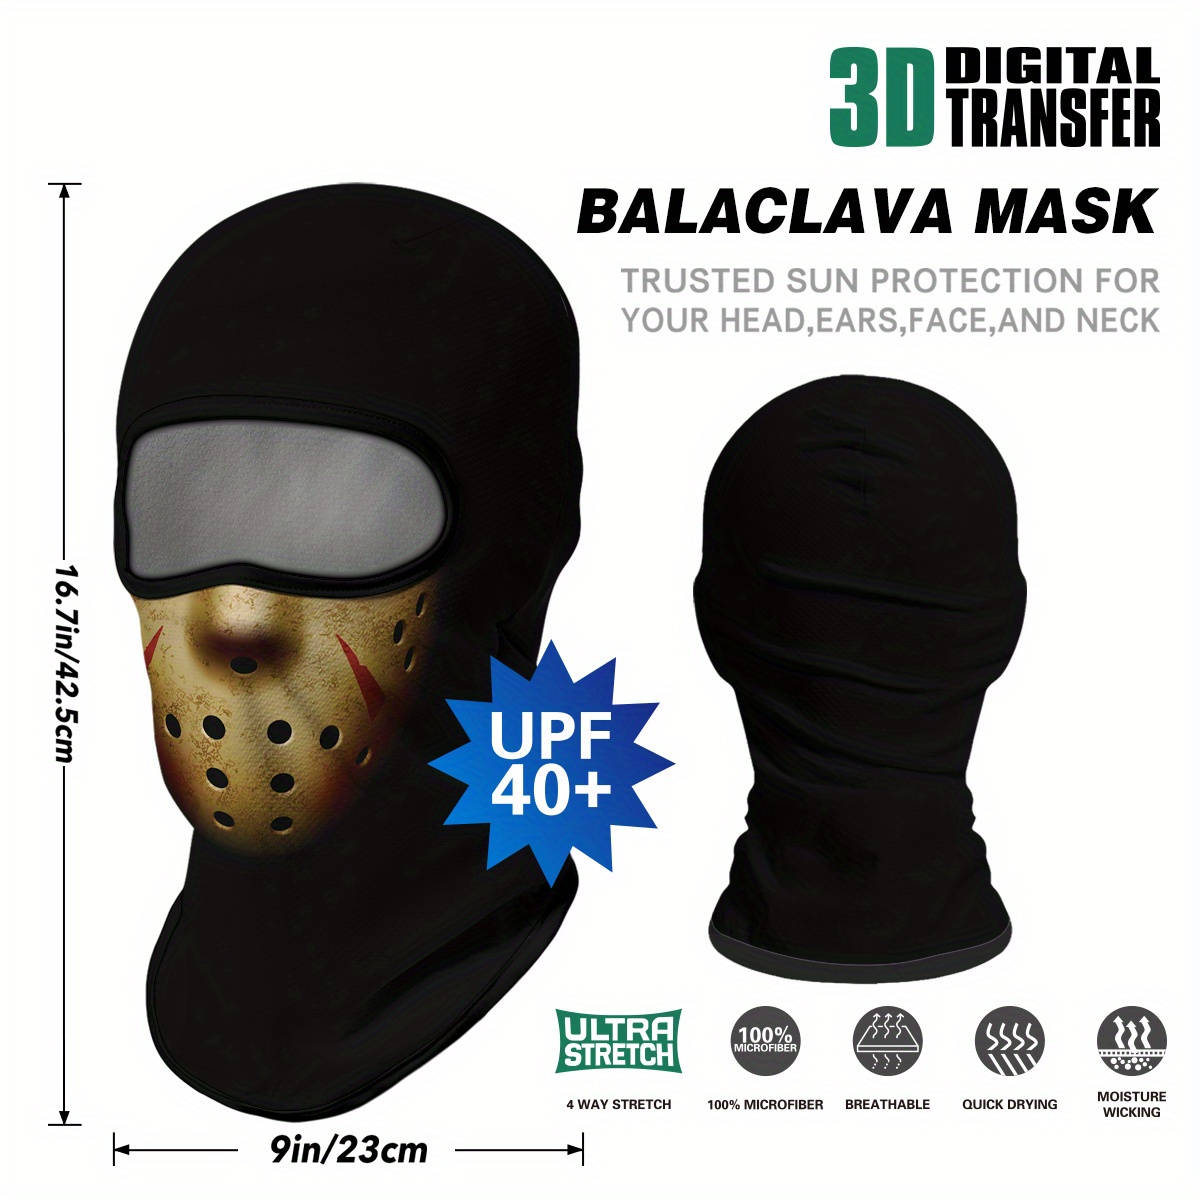 Calavera pasamontañas fantasmas calavera máscara facial completa para  fiesta de disfraces Halloween al aire libre